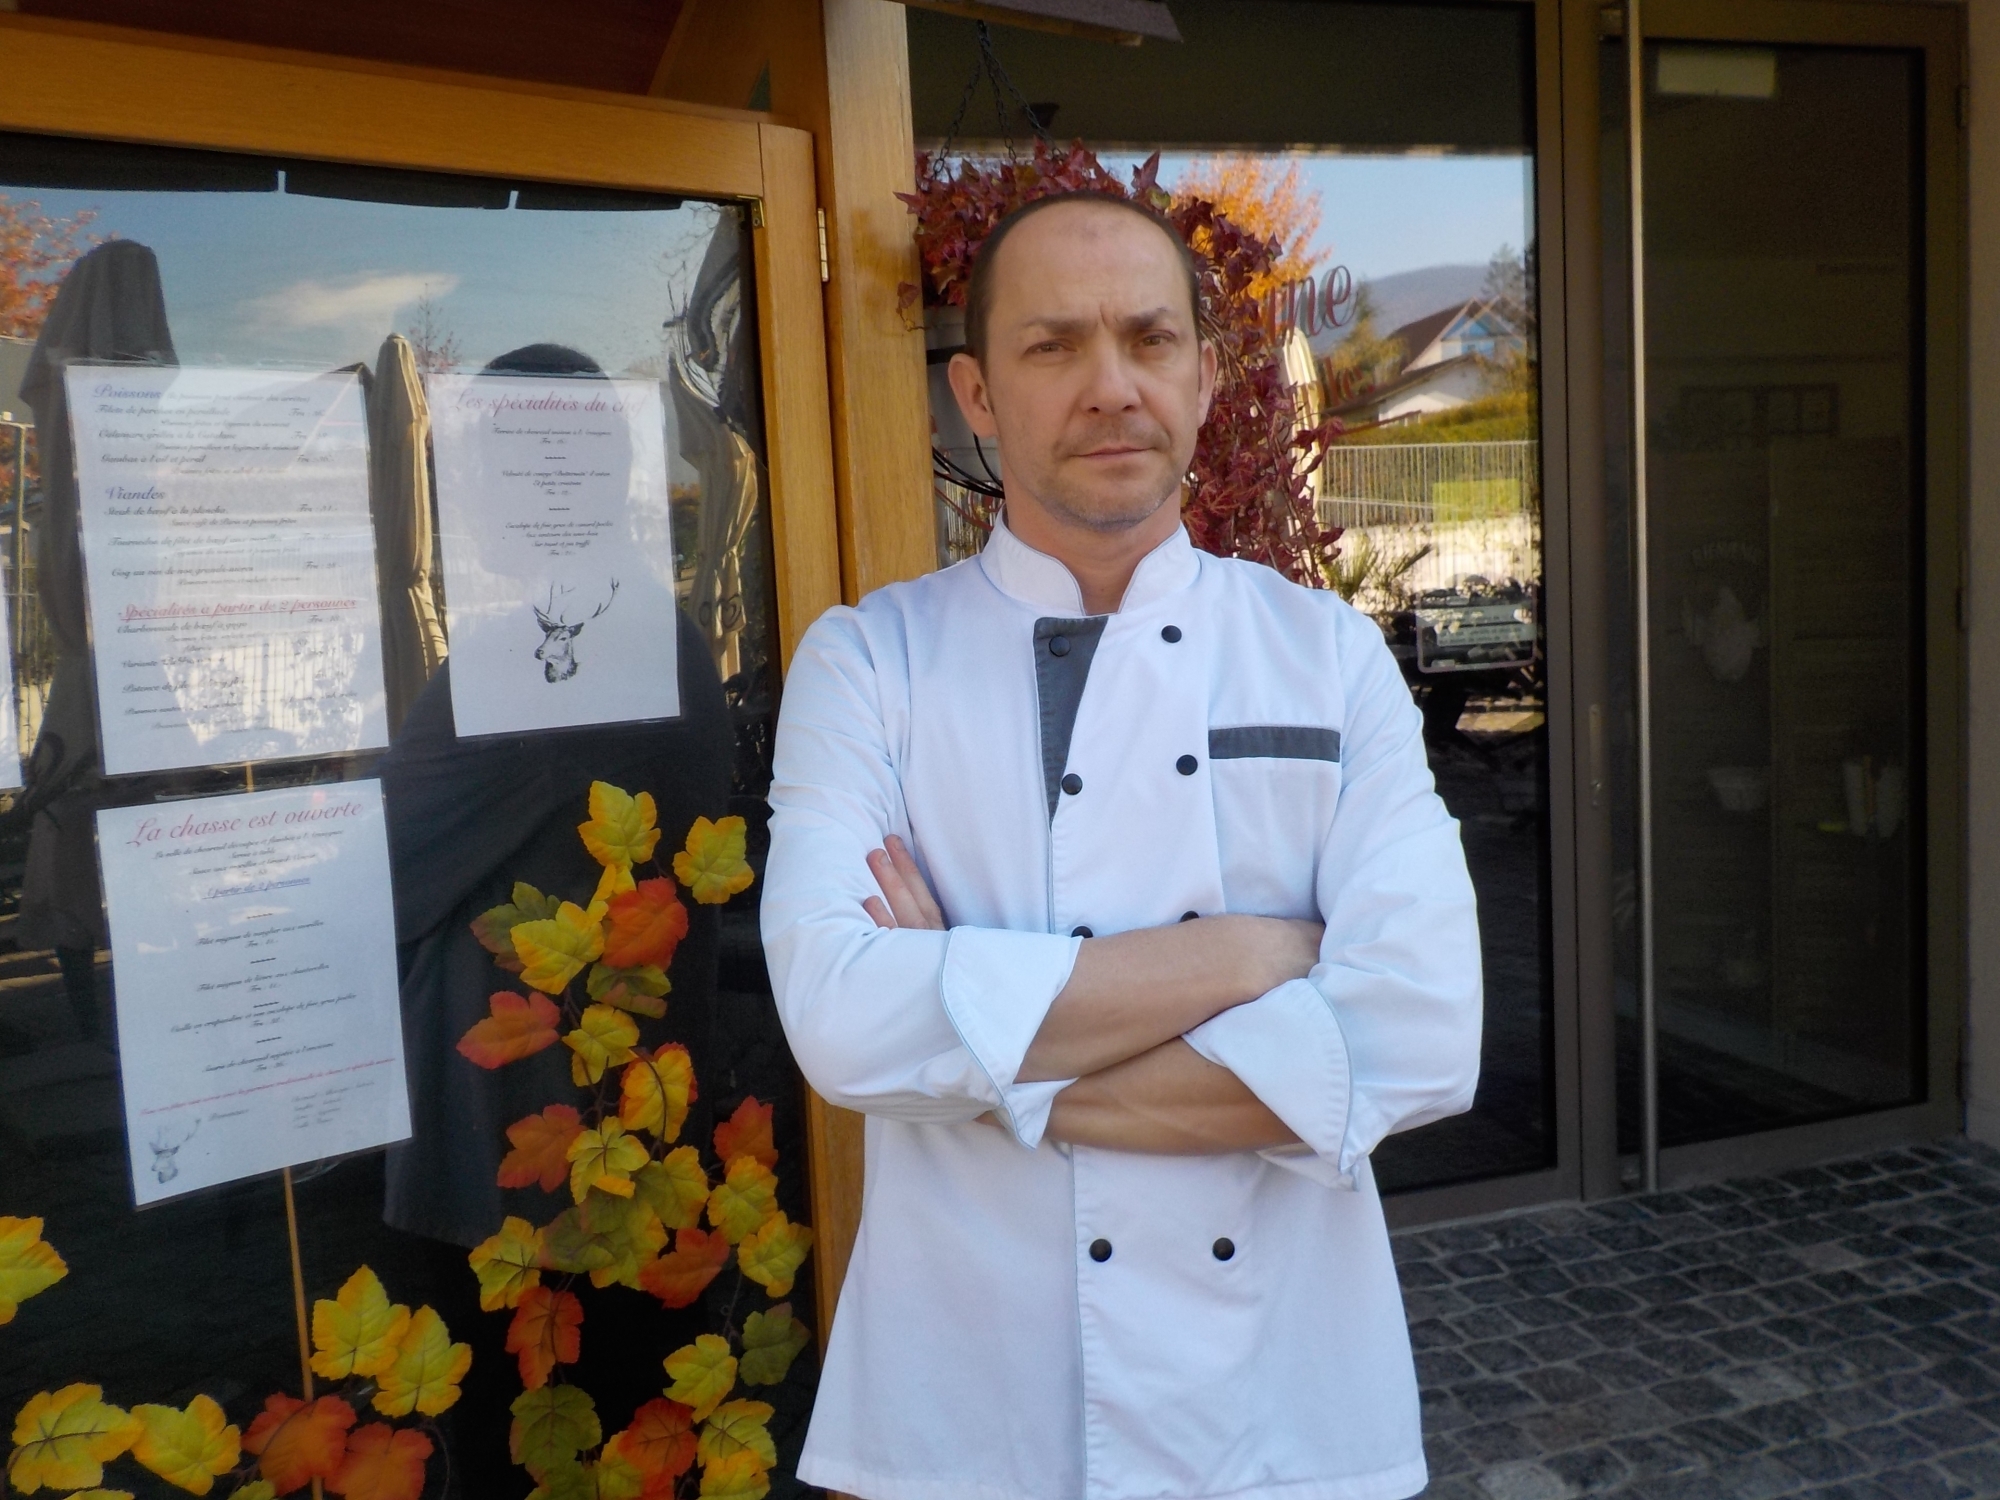 David Boulard, patron du restaurant La Ferme, à Borex, n'a guère apprécié de se faire insulter puis agresser par un client qui refusait de régler sa note.